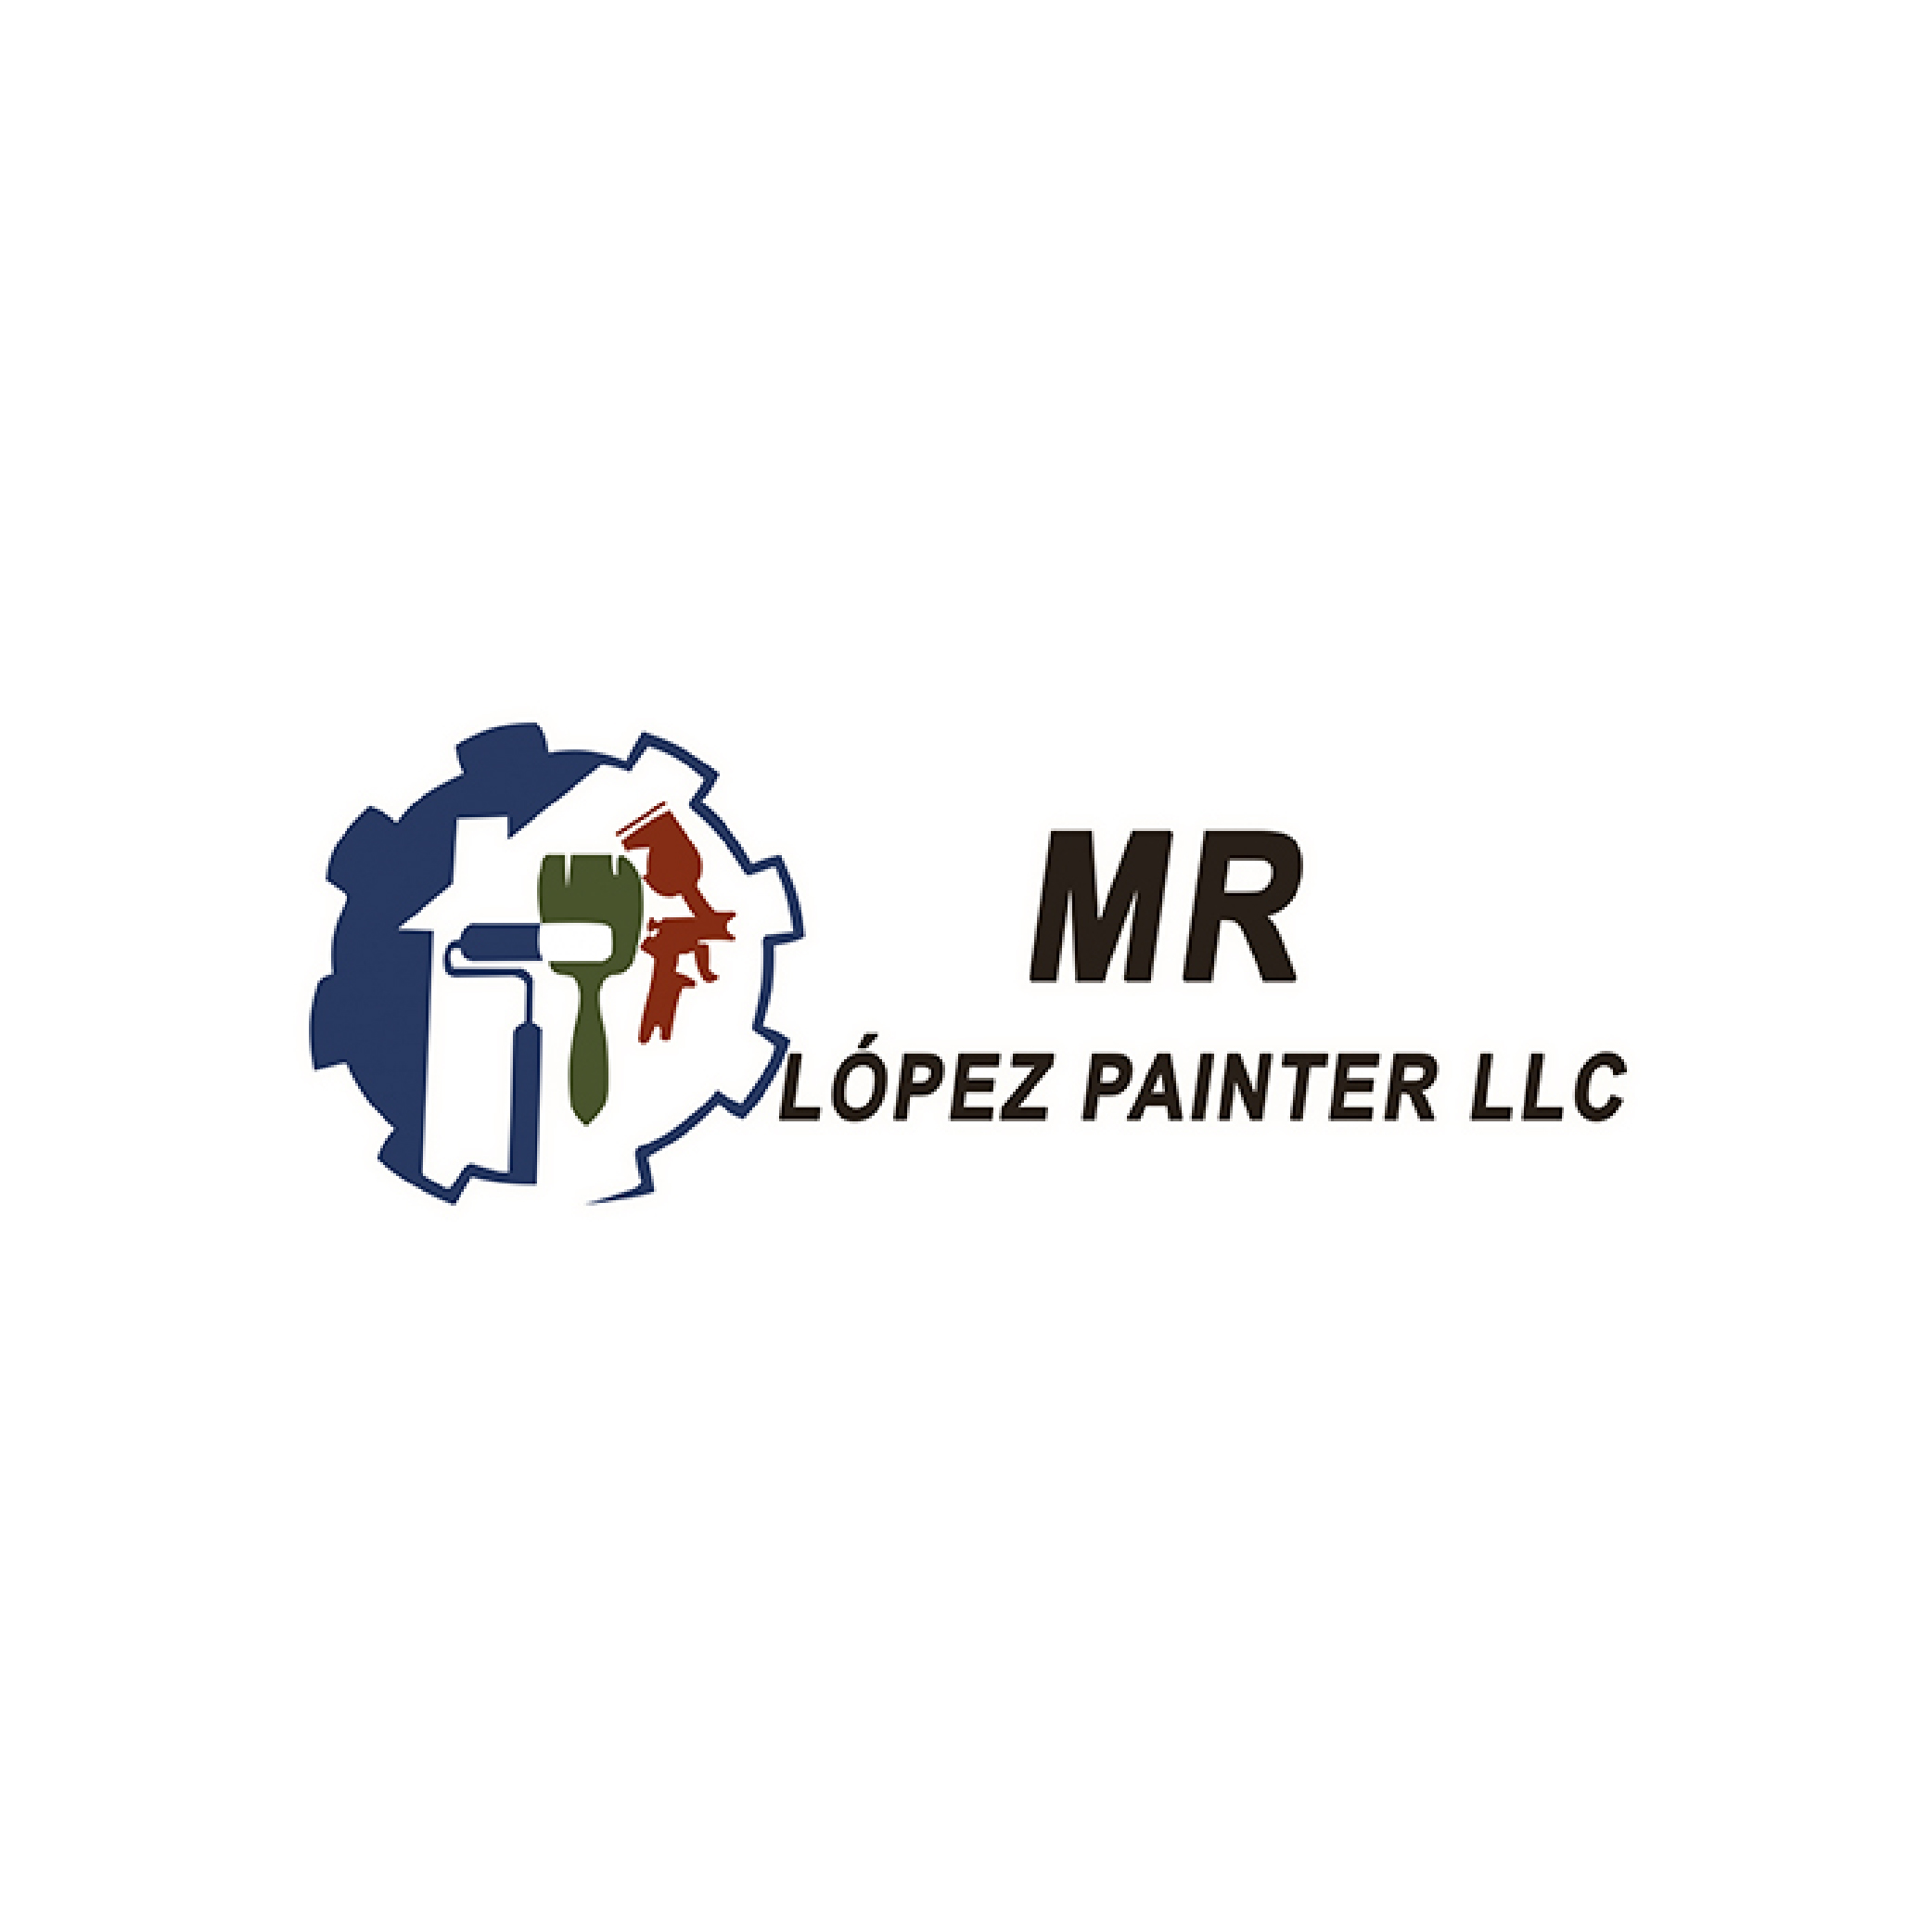 MR Lopez Painter LLC